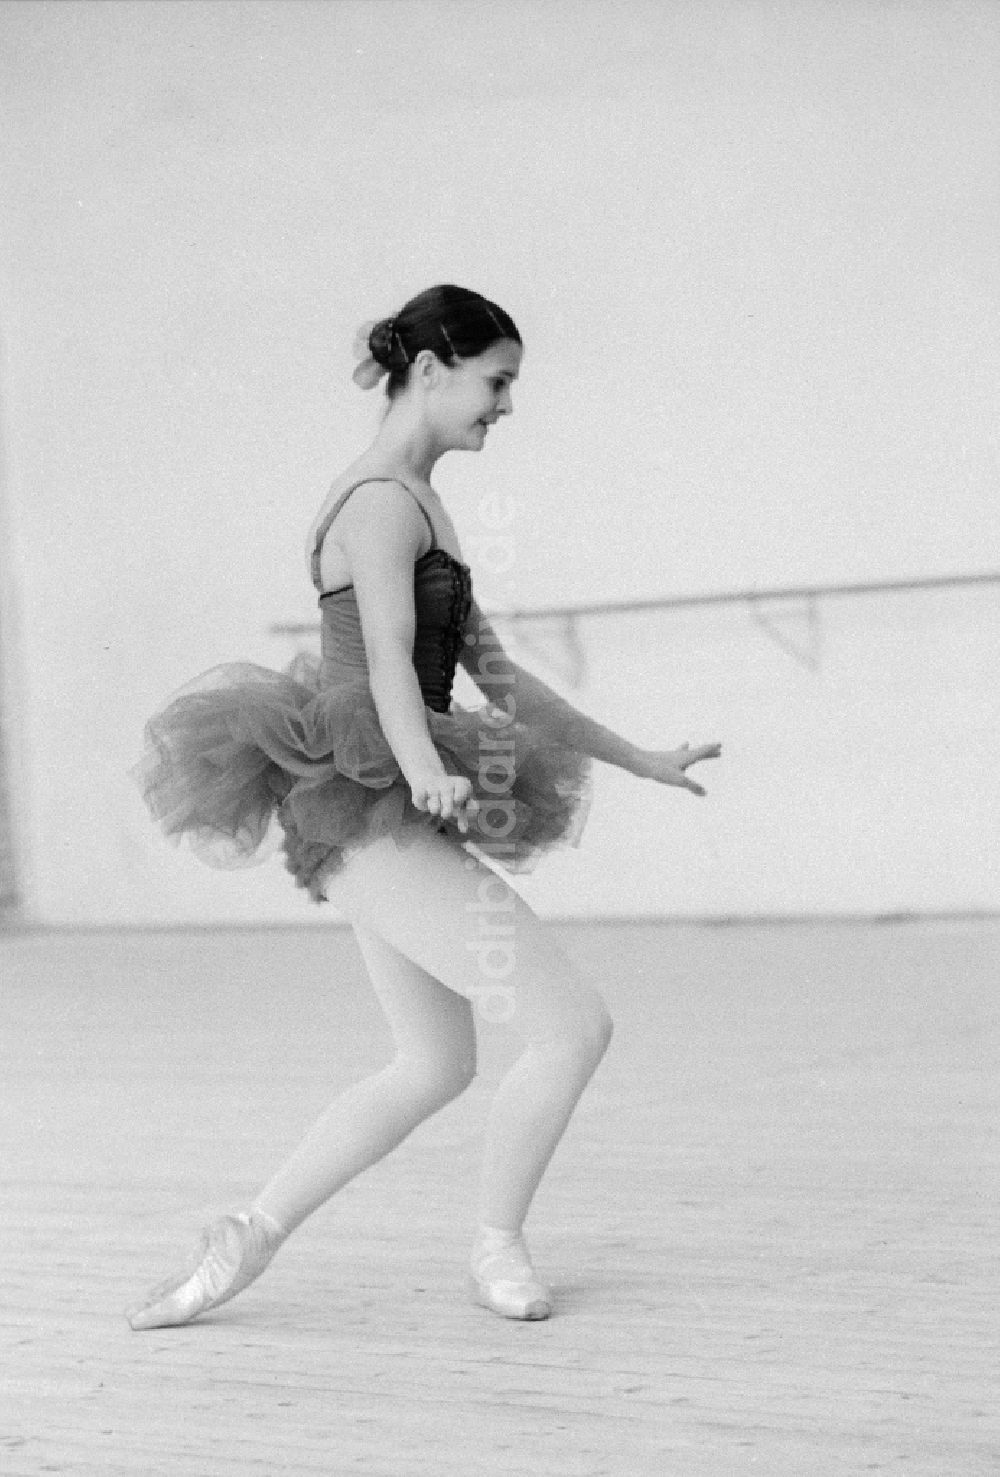 Berlin: Ballettunterricht an der Staatlichen Ballettschule und Schule für Artistik in Berlin, der ehemaligen Hauptstadt der DDR, Deutsche Demokratische Republik